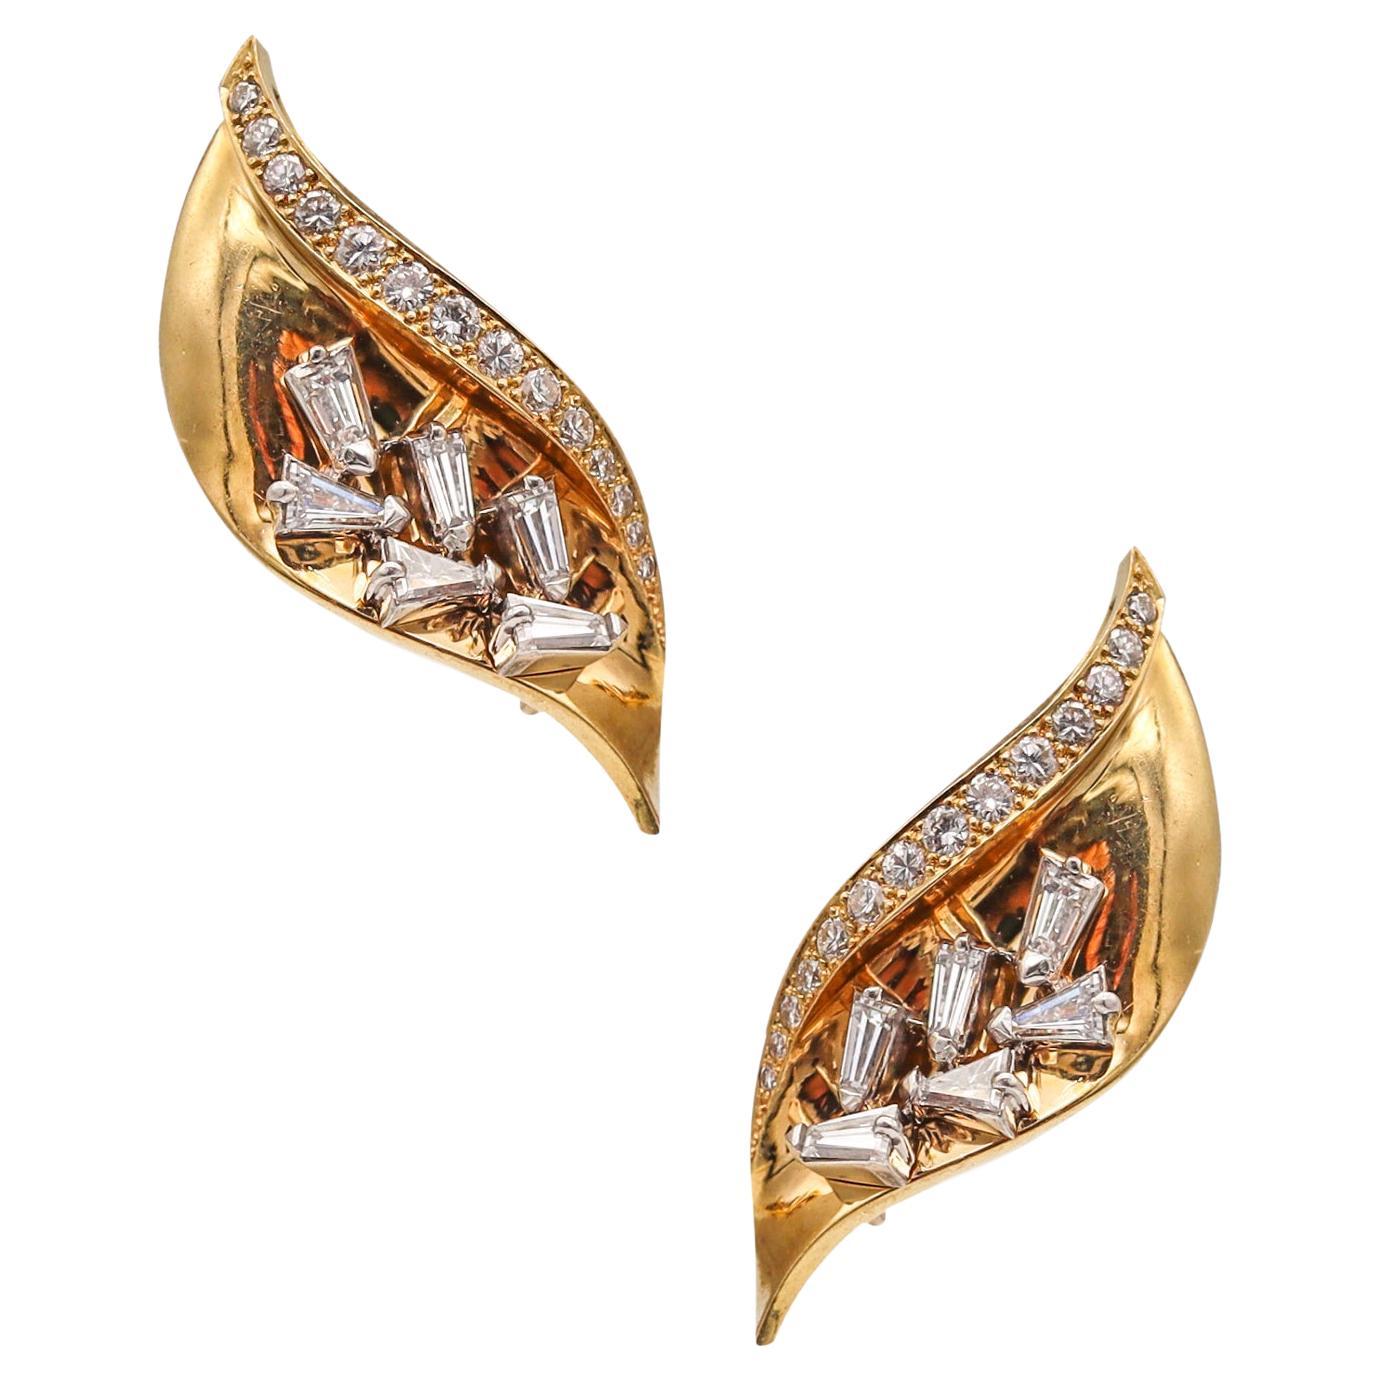 Guillemin & Soulaine Paris Boucles d'oreilles convertibles en or 18 carats, platine et diamants